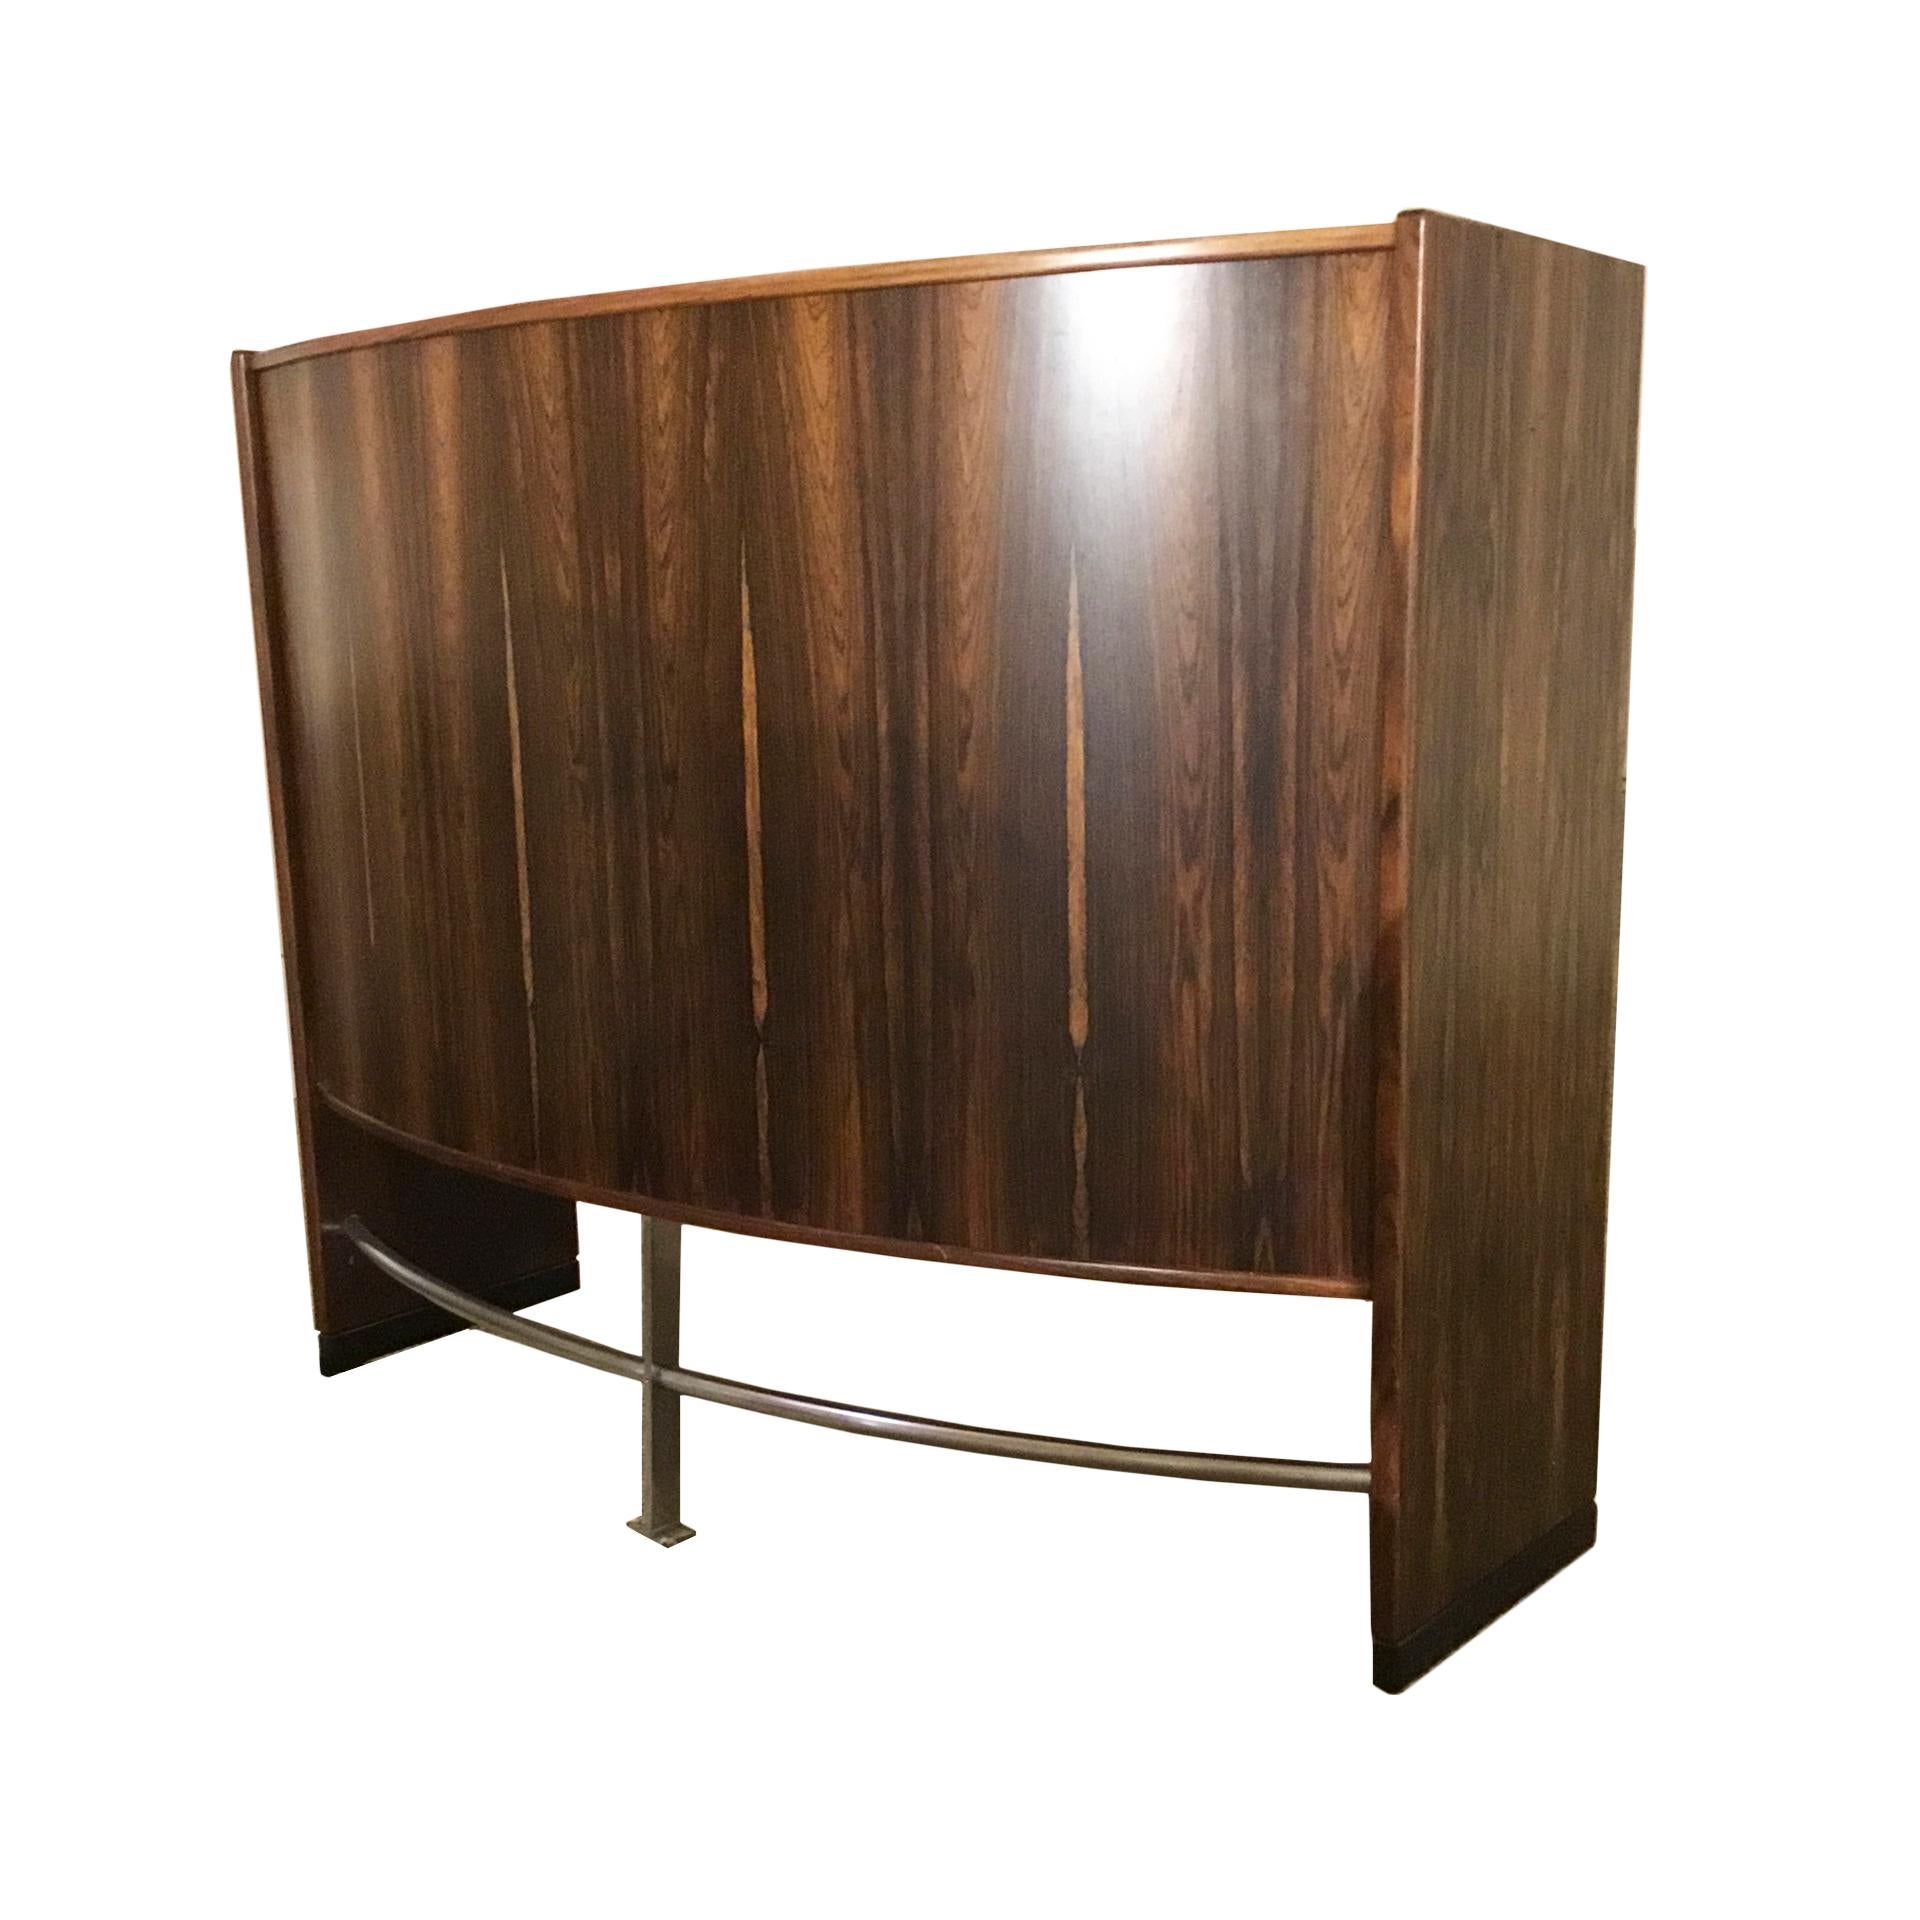 Italian Danish Bar Furniture Mod. Dyrlundbar Designed By Erik Buch